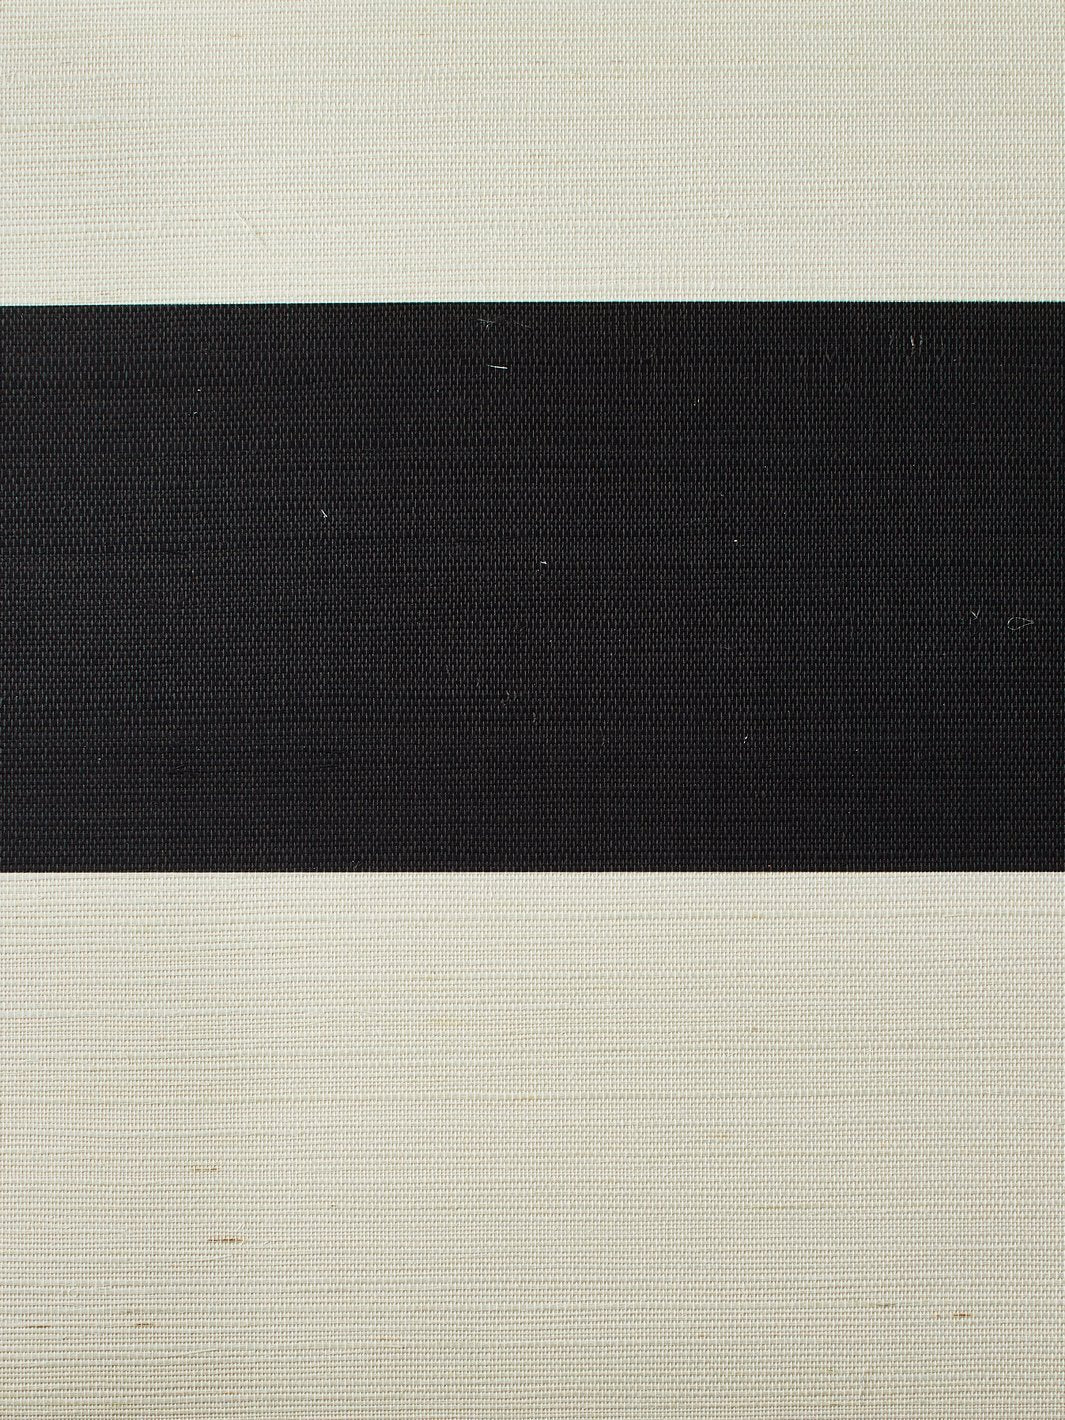 'Wide Stripe' Grasscloth' Wallpaper by Wallshoppe - Black